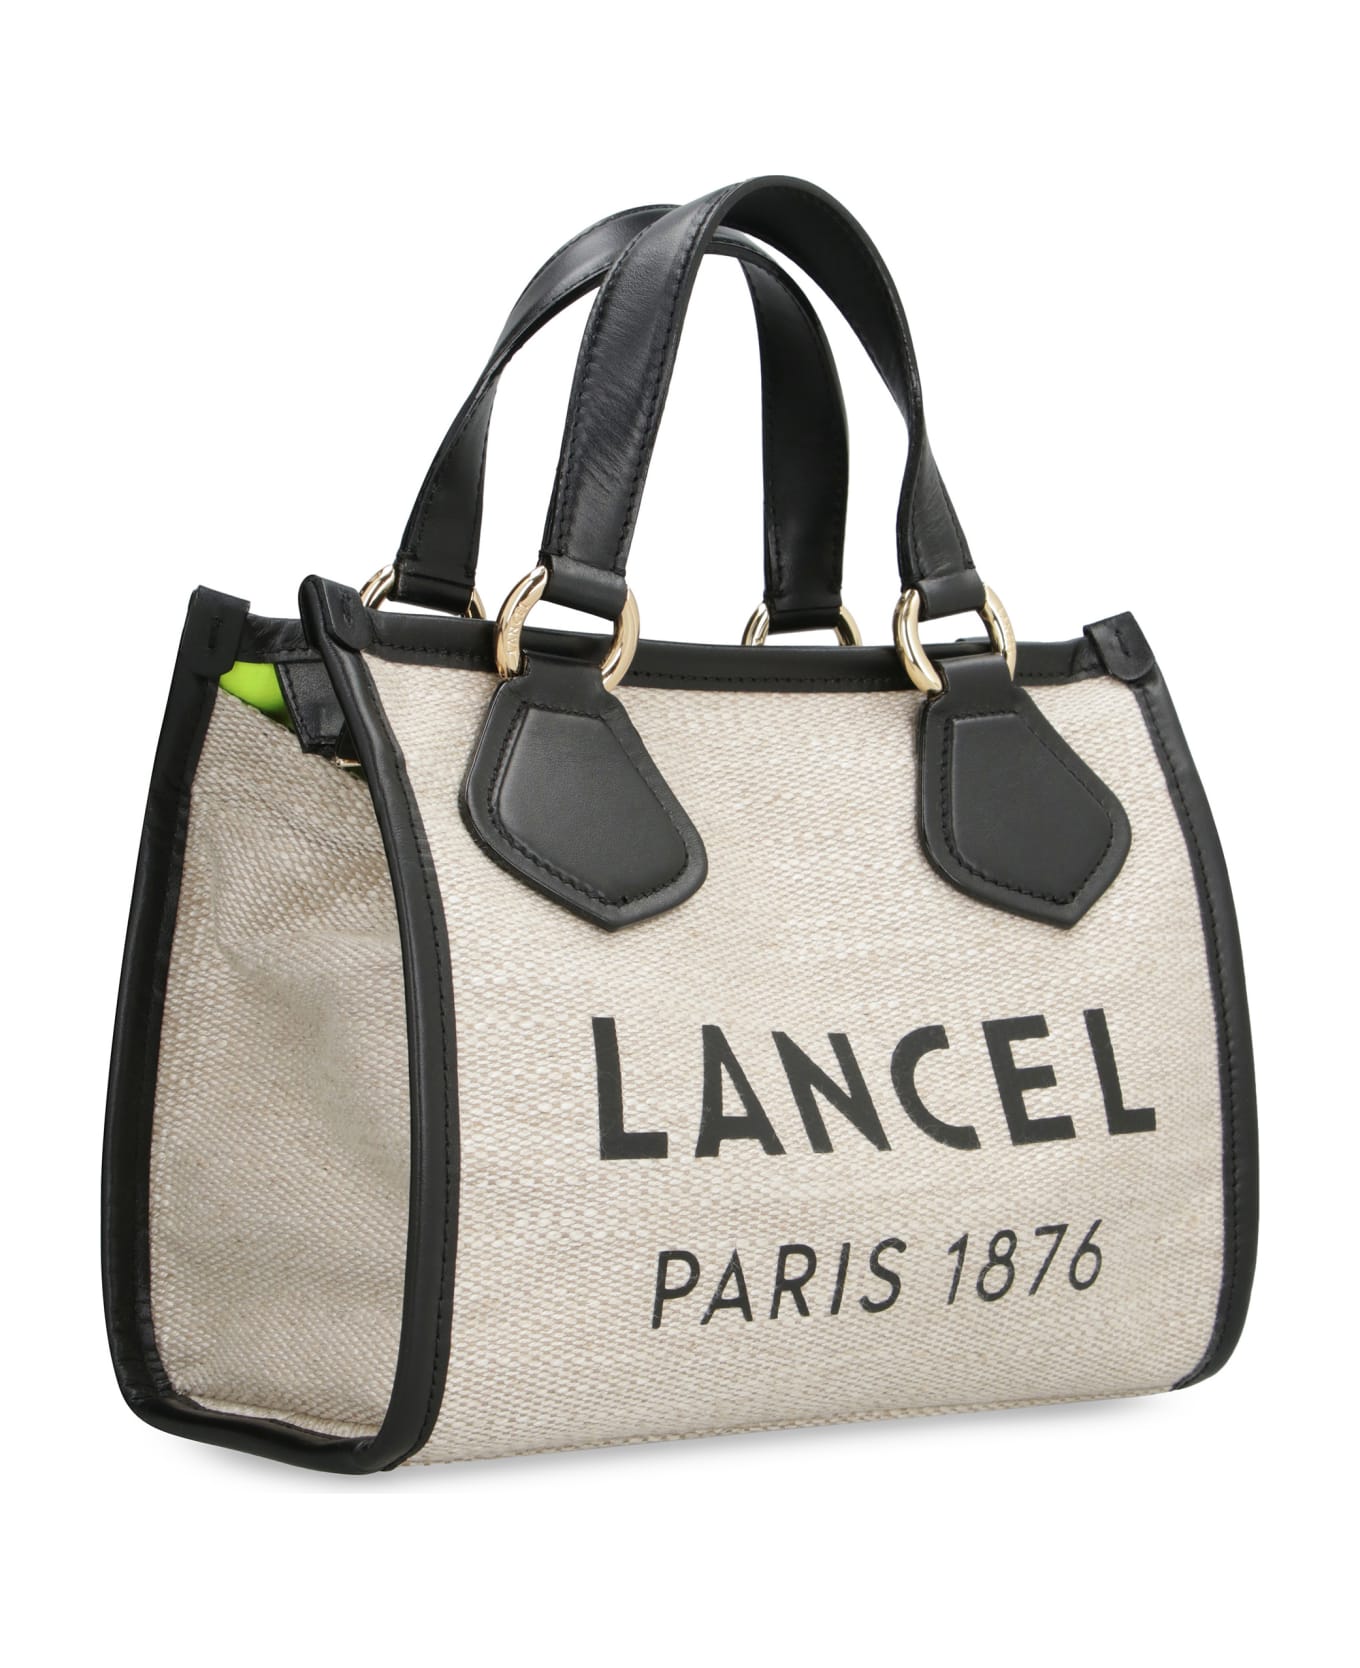 Lancel Summer Tote Bag - Black